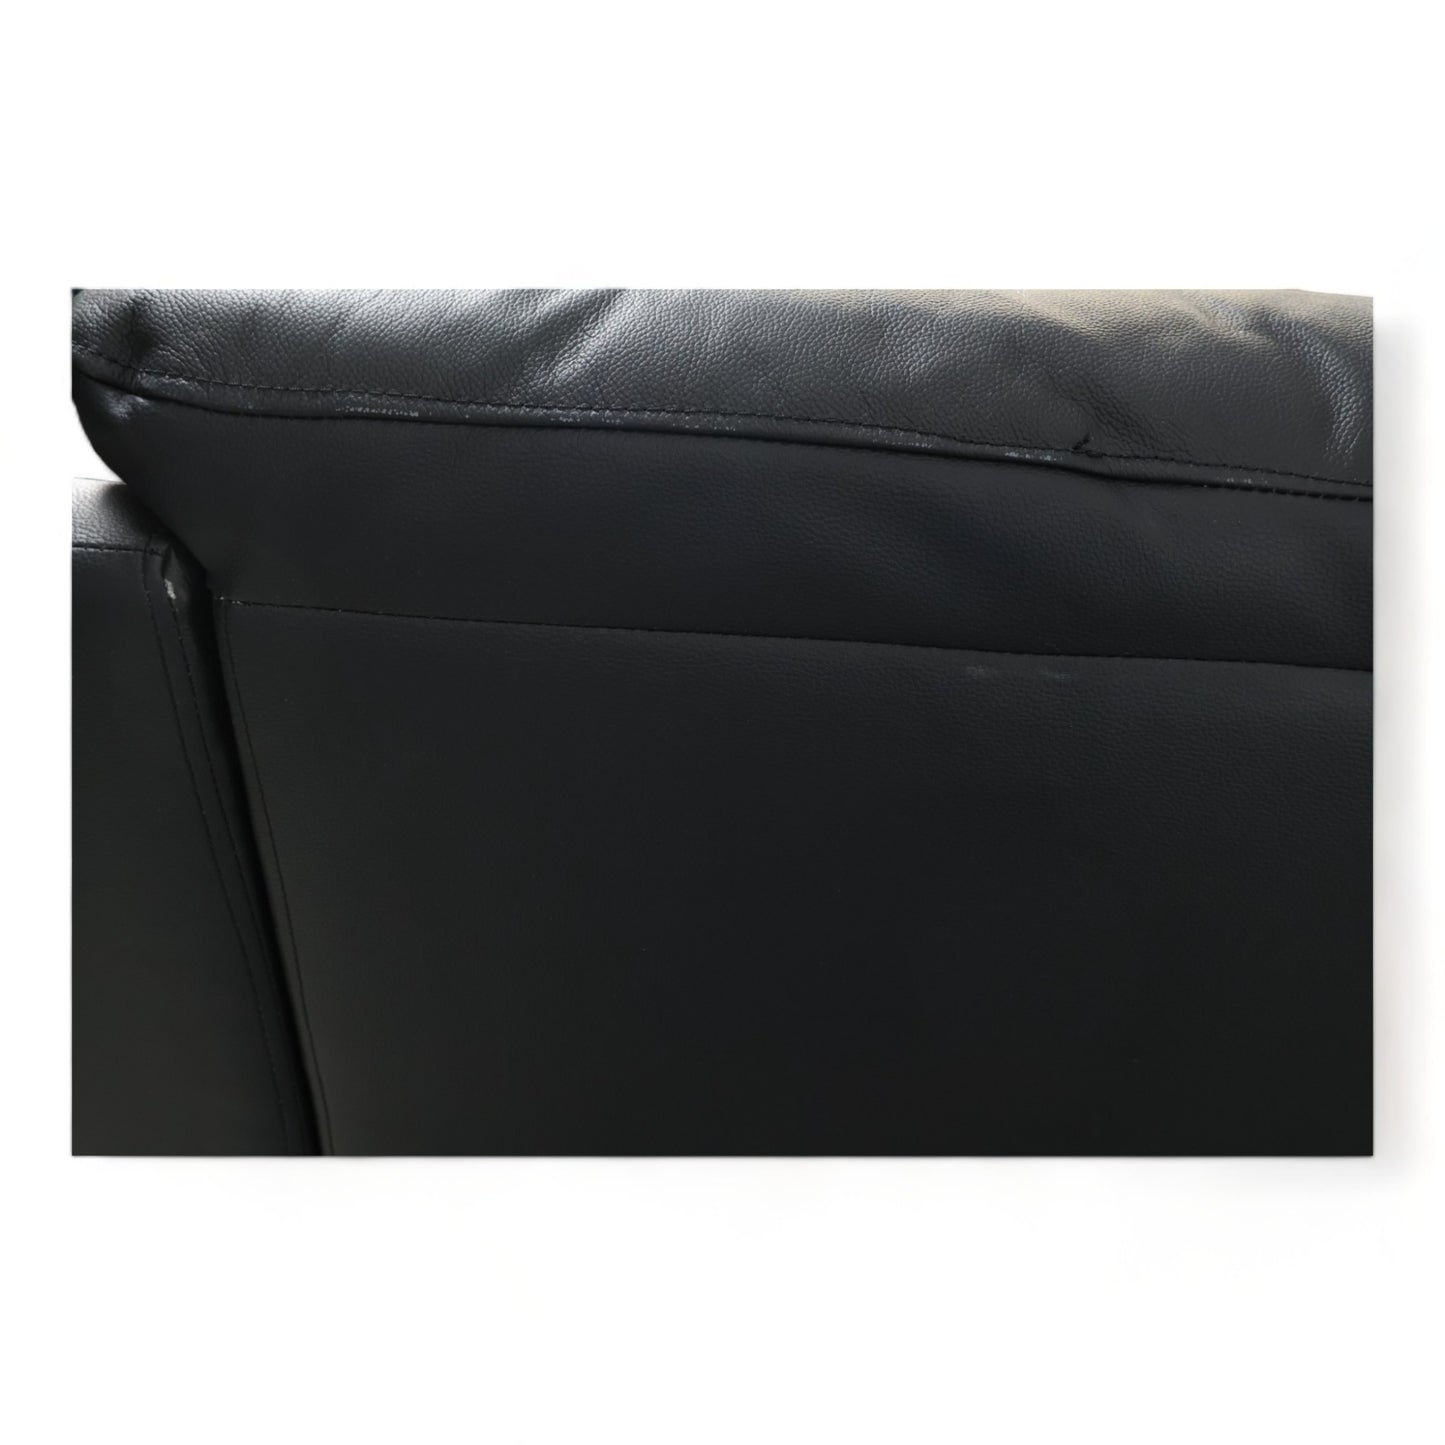 Nyrenset | Sort Mayfield 3-seter sofa med manuell recliner fra A-Møbler